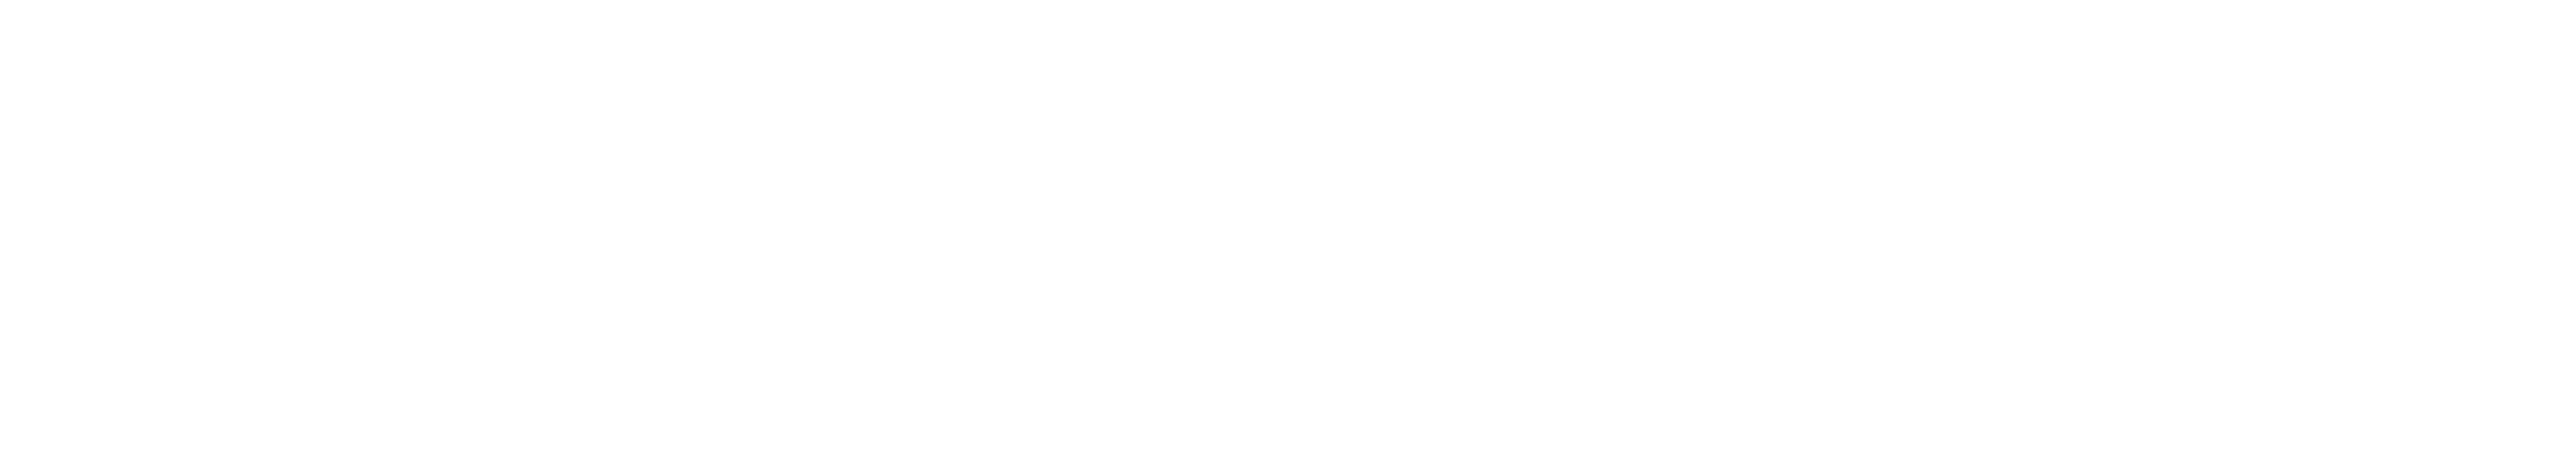 STARTUP cloudcart-logo